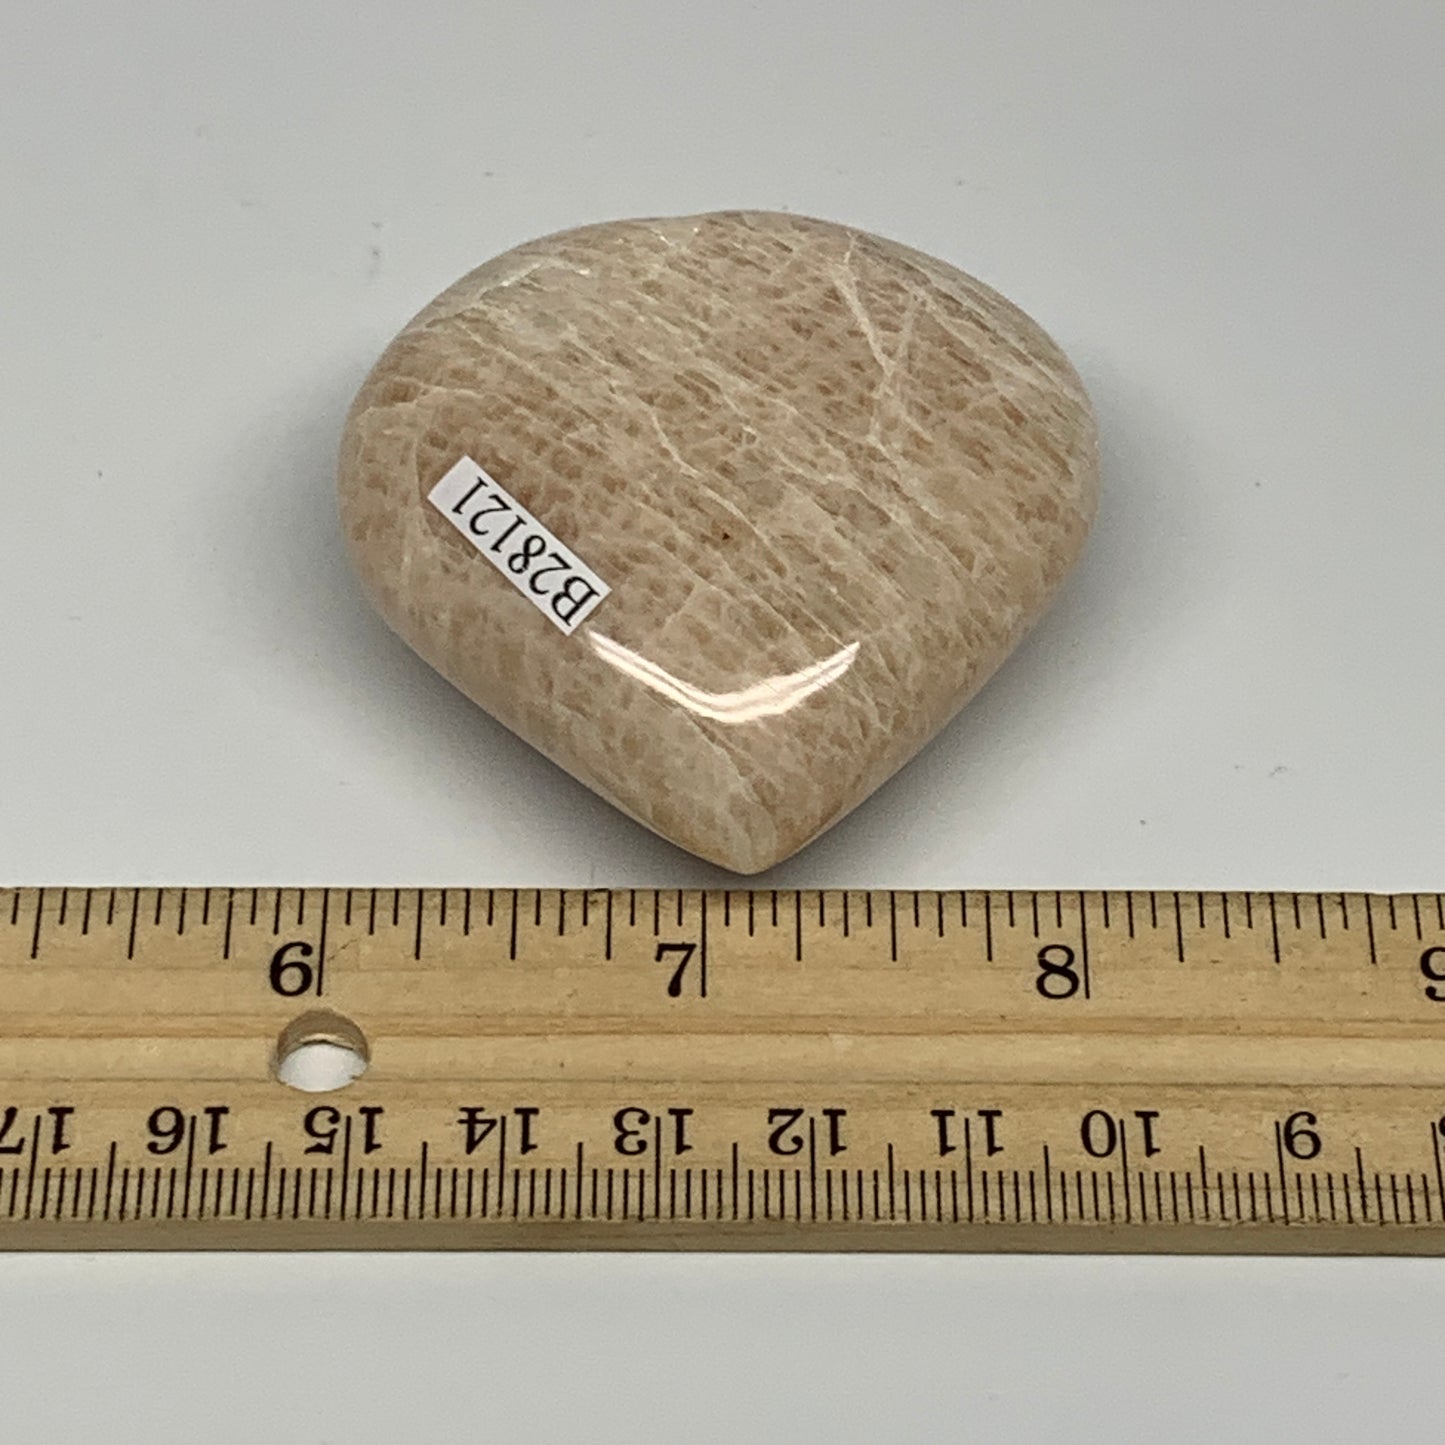 84.3g, 2.1"x2.1"x0.9", Peach Moonstone Heart Crystal Polished Gemstone, B28121